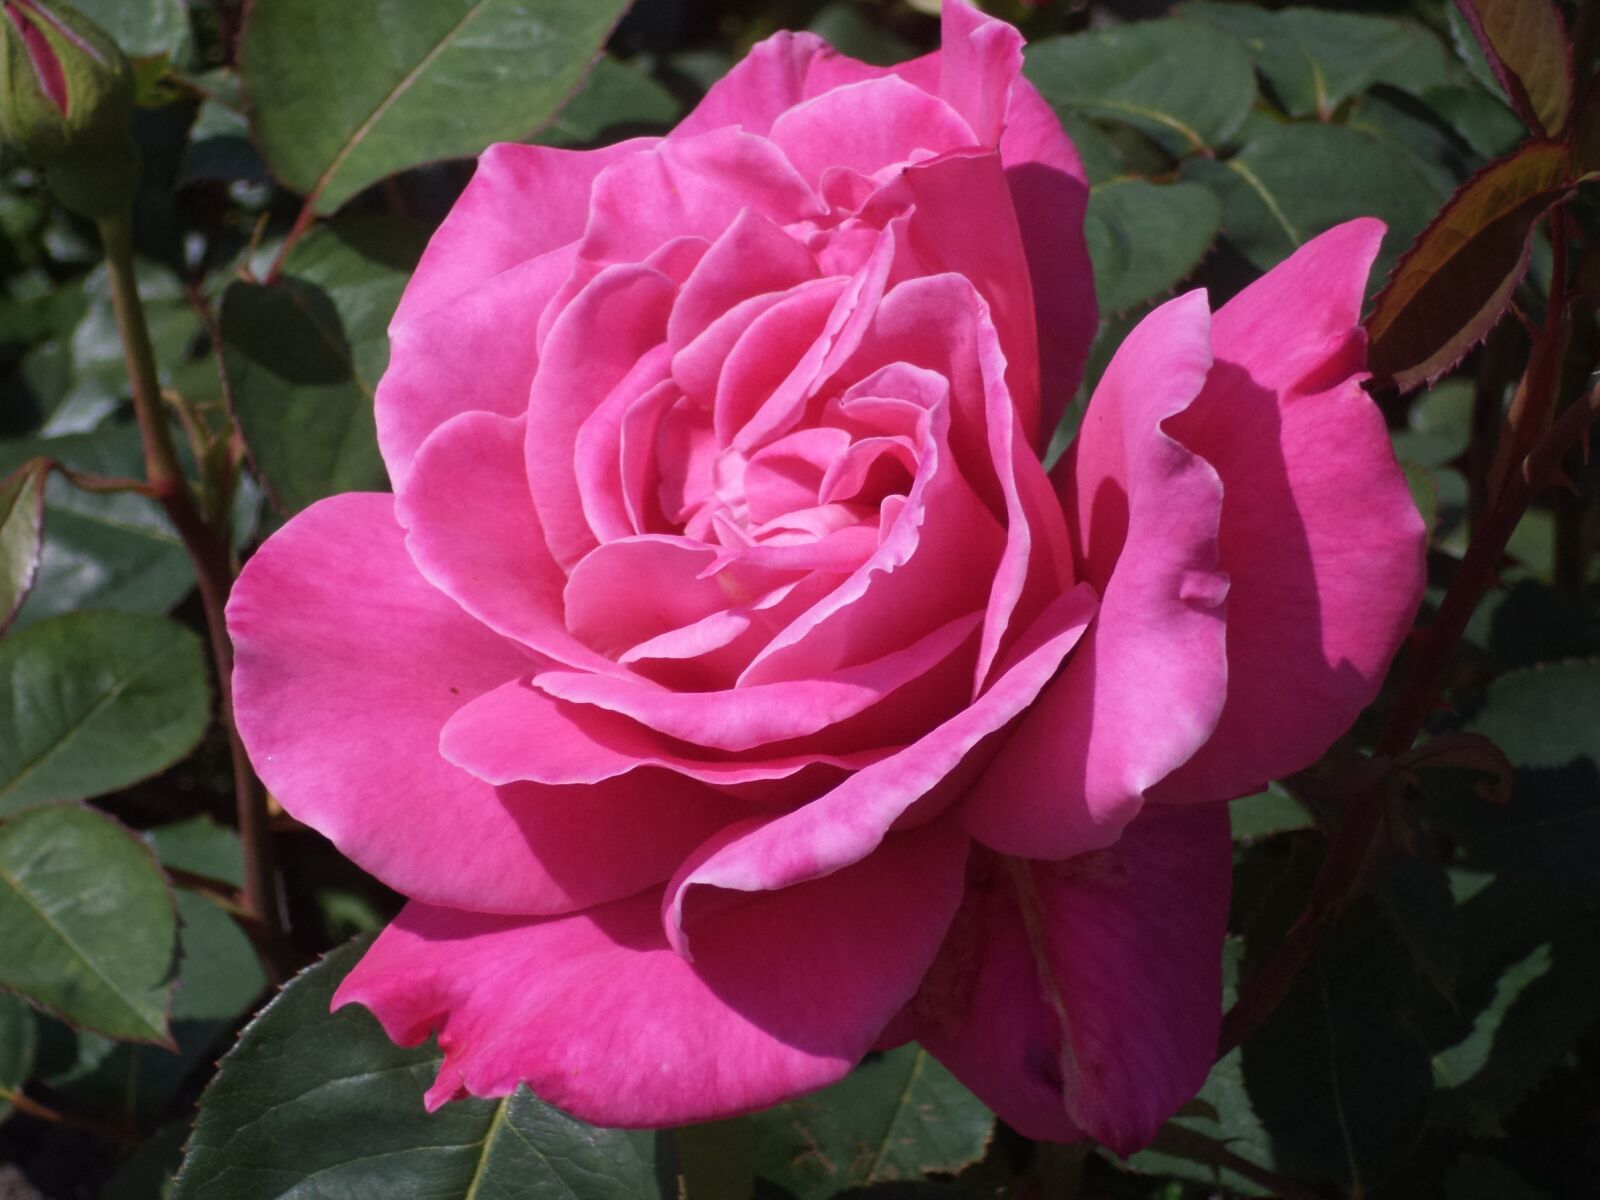 Sony DSC-S5000 sample photo. Rose, flower, rose flower photography